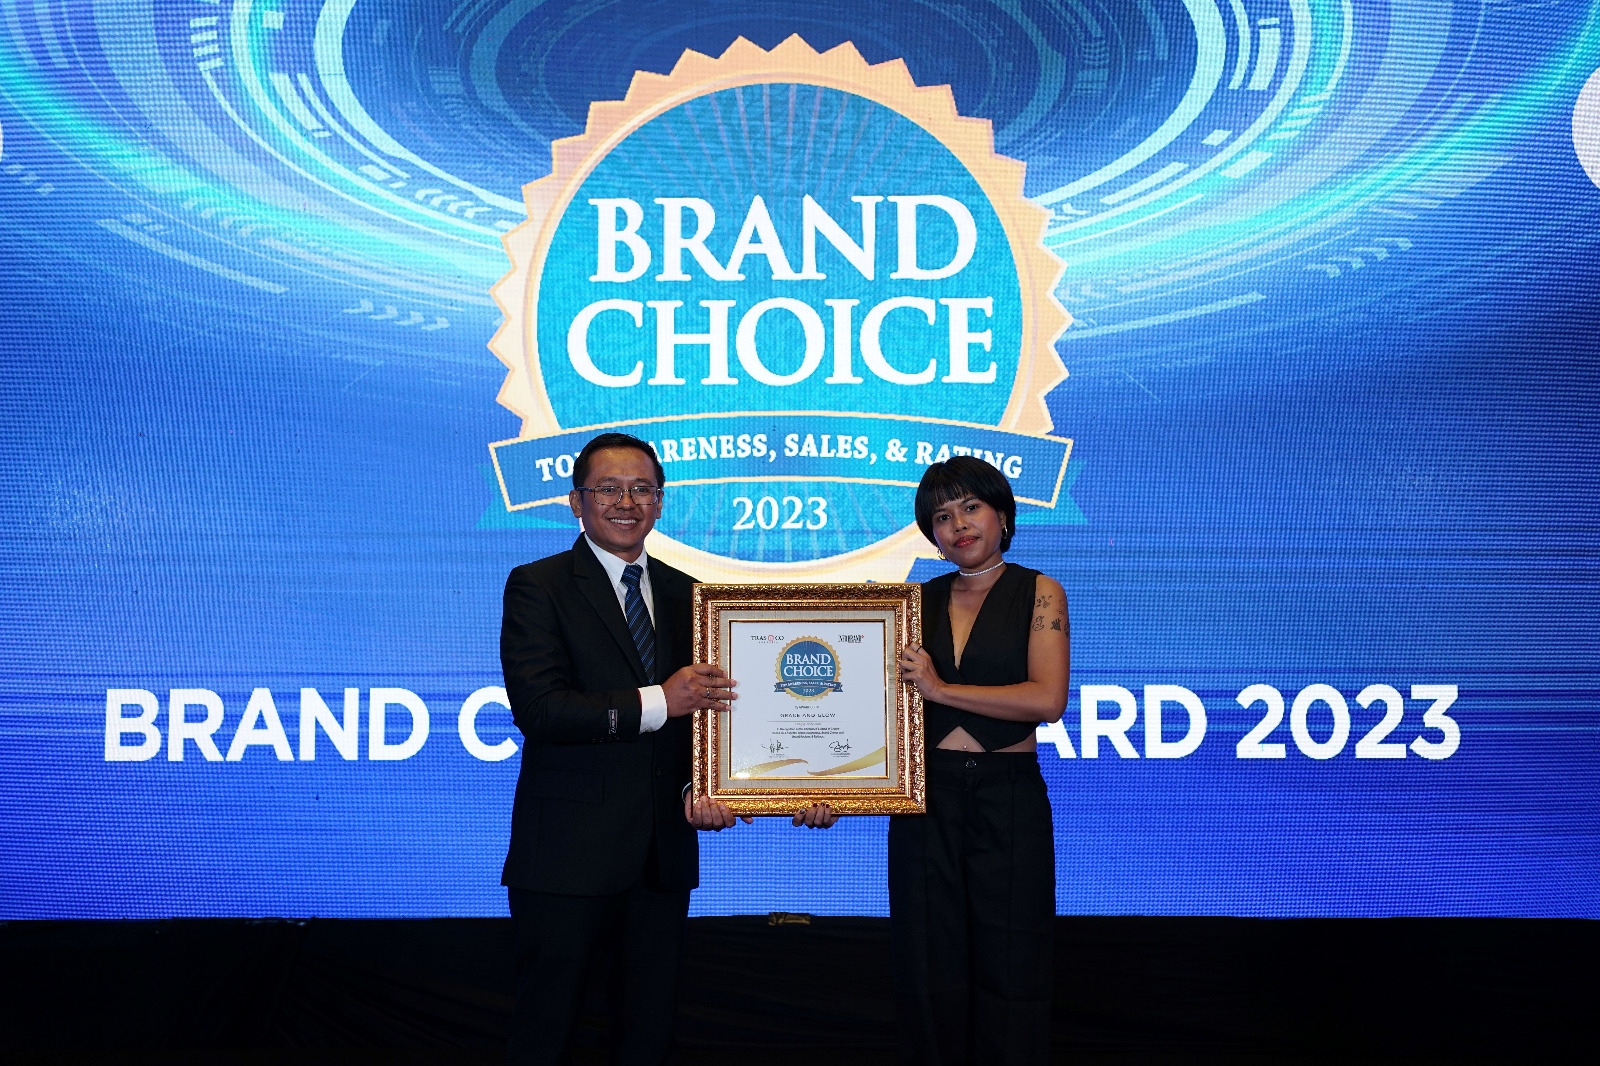 Raih Penghargaan Brand Choice Award 2023, Grace and Glow Skin Care Siap Ekspansi hingga ke Luar Negeri